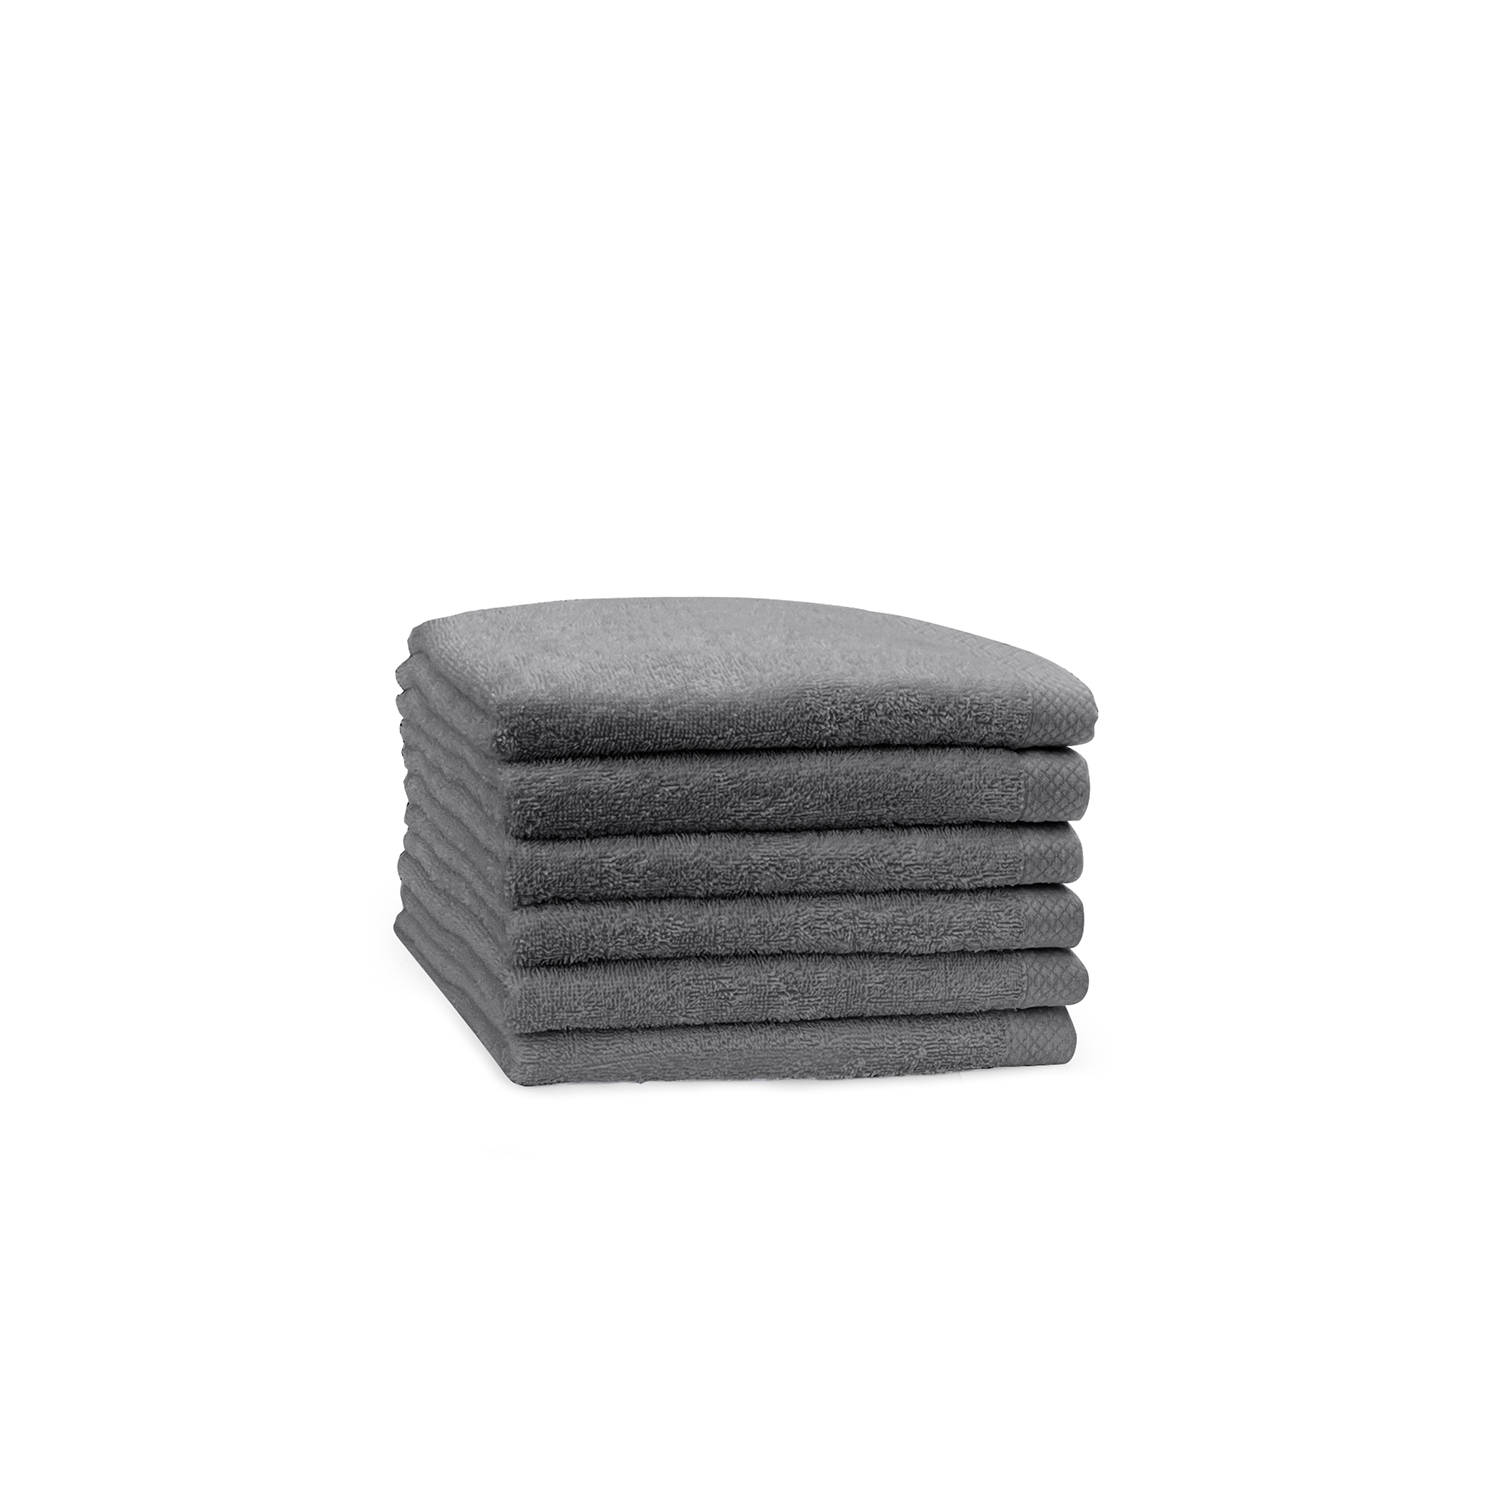 Eleganzzz Handdoek 100% Katoen 50x100cm - dark grey - Set van 6